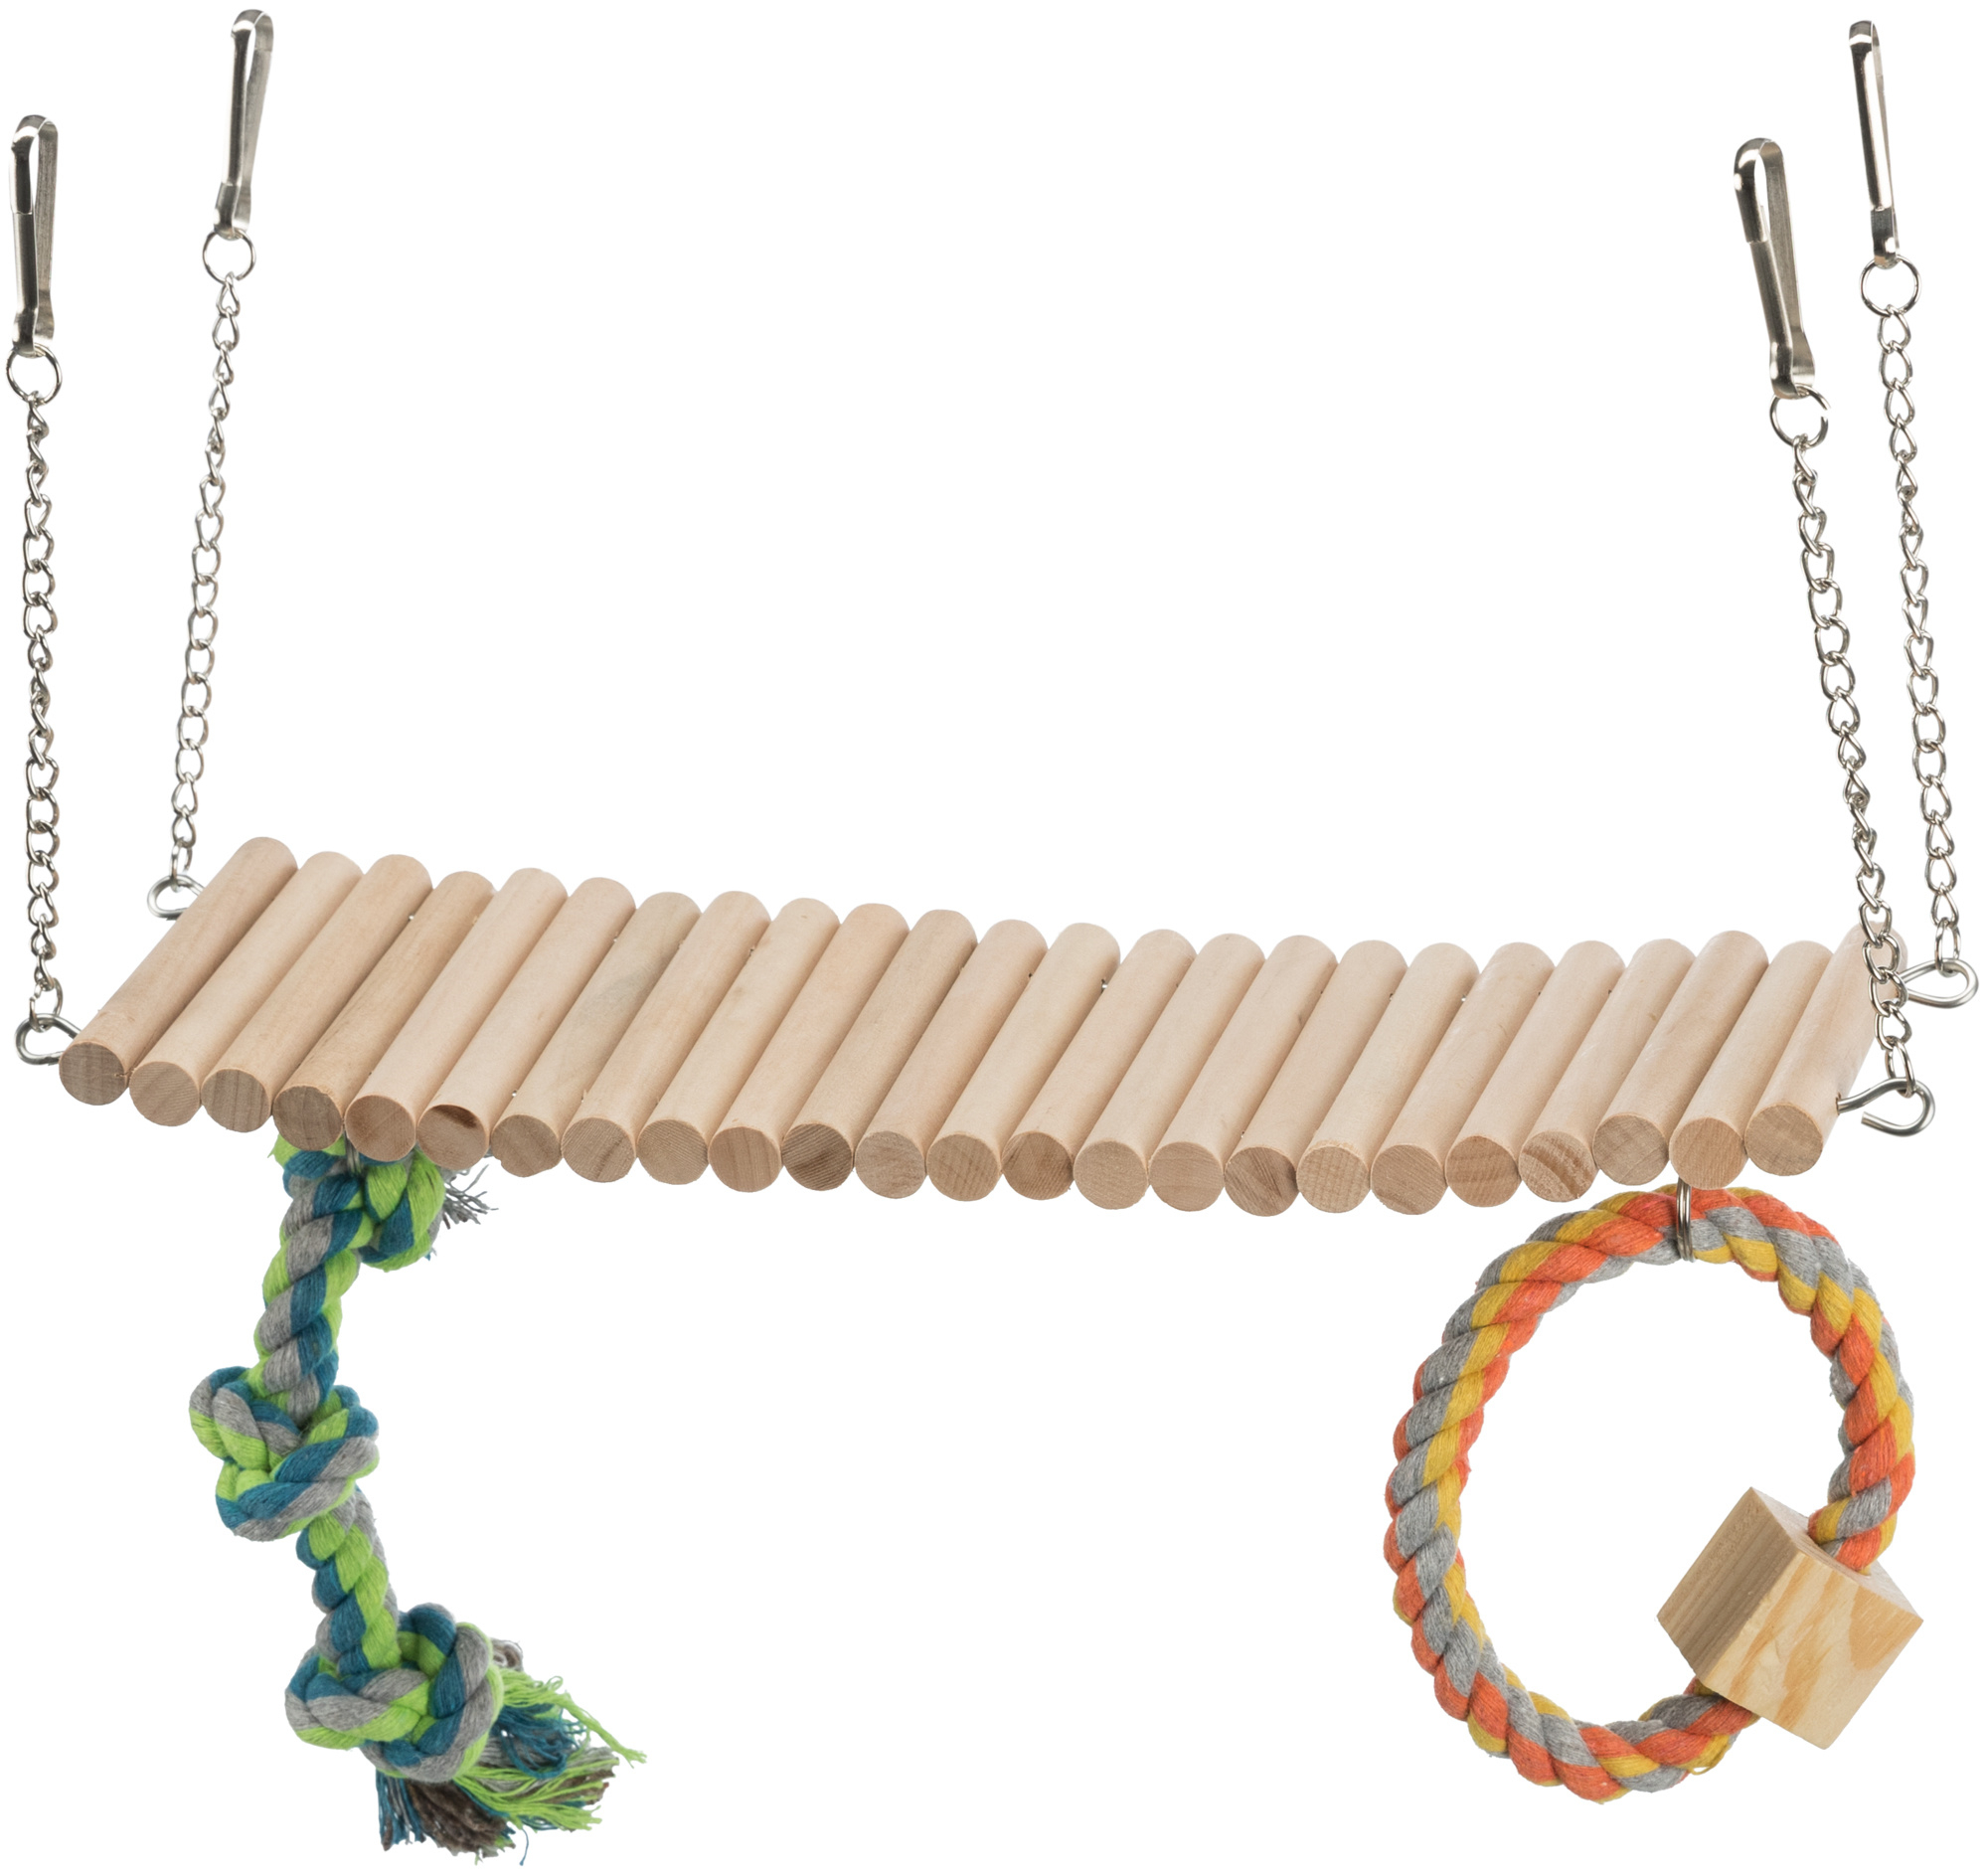 Hängebrücke aus Holz mit Seil und Nagetierspielzeug